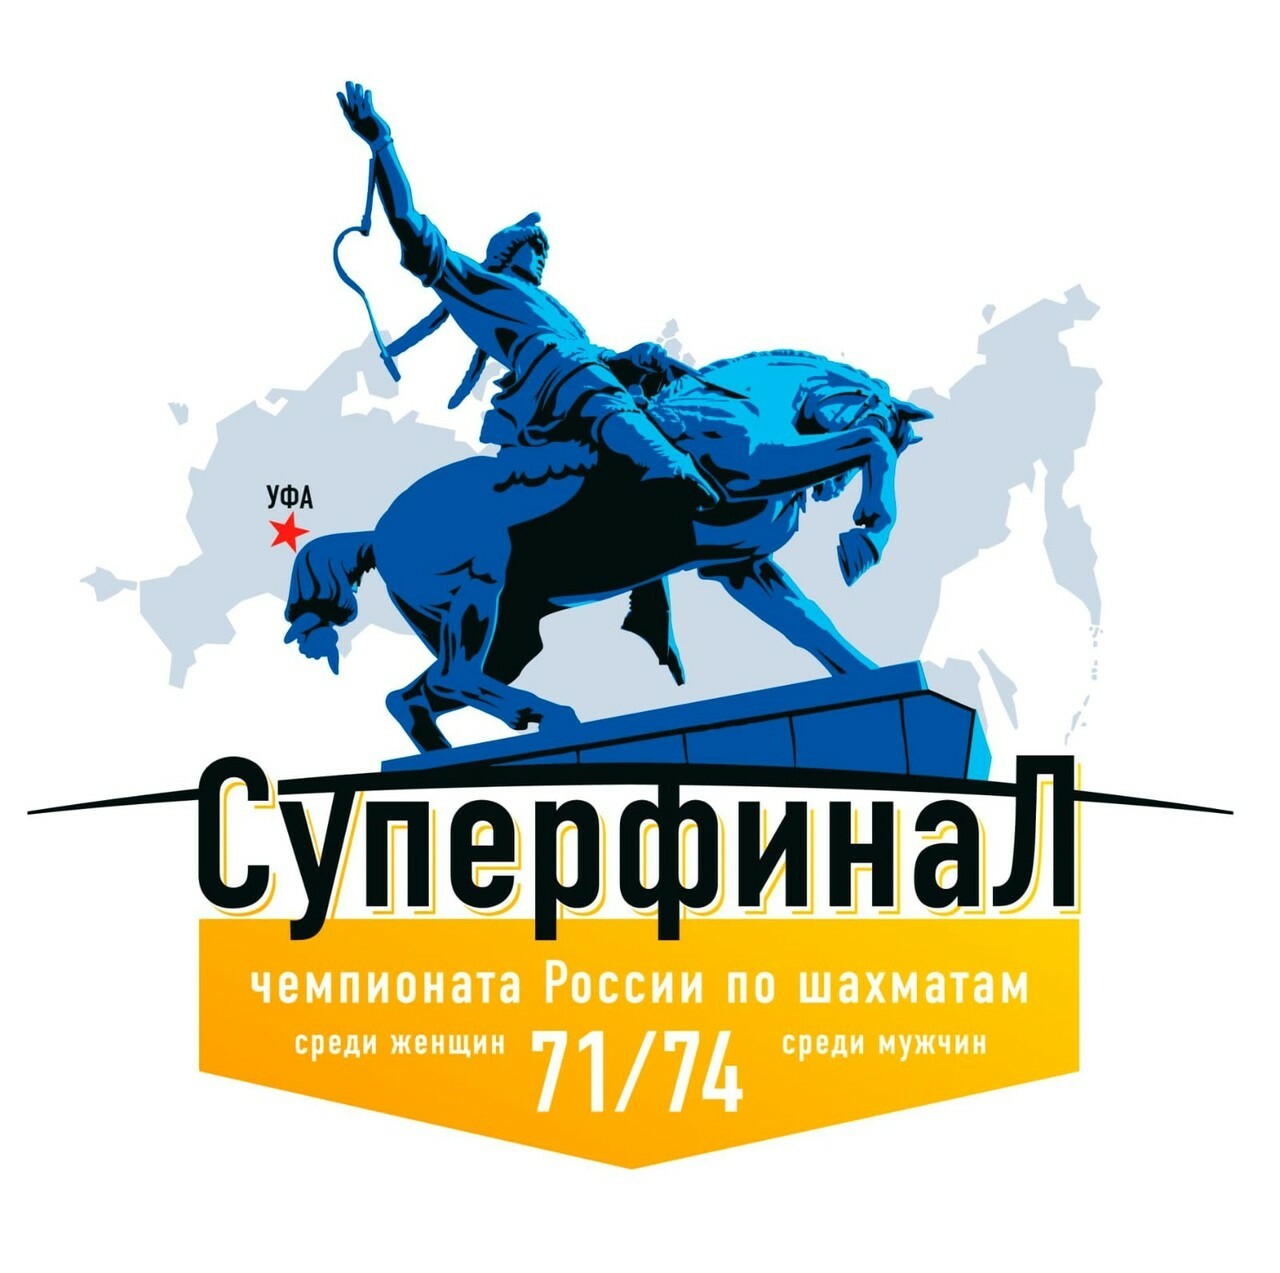 Уфа впервые примет у себя крупнейшие шахматные турниры страны